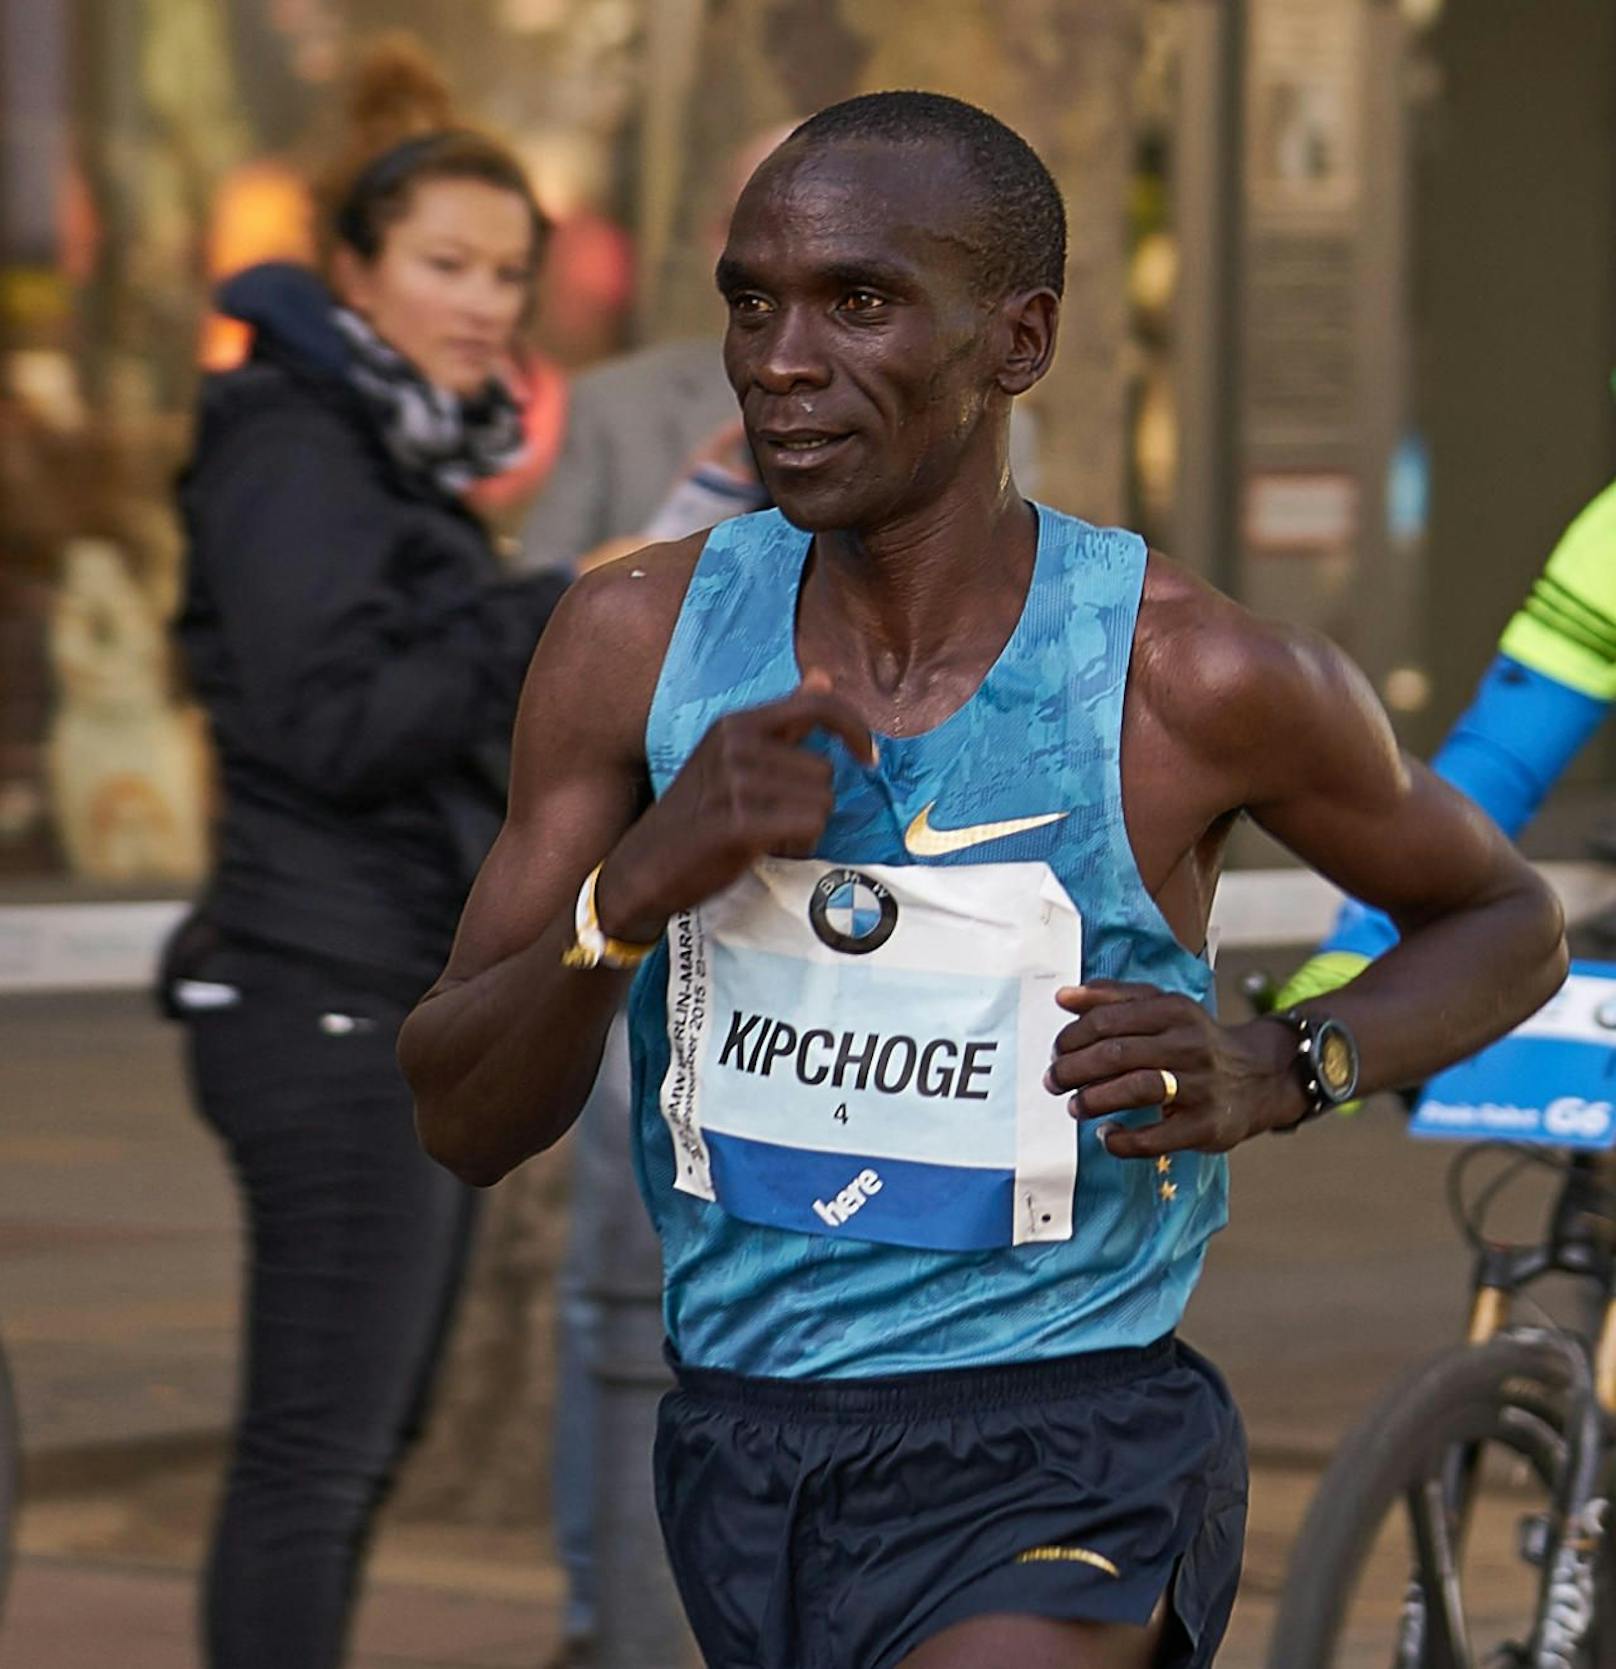 Der kenianische Olympiasieger im Marathon Eliud Kipchoge (35) will im Oktober auf der Prater Hauptallee die 2-Stunden-Marke knacken.